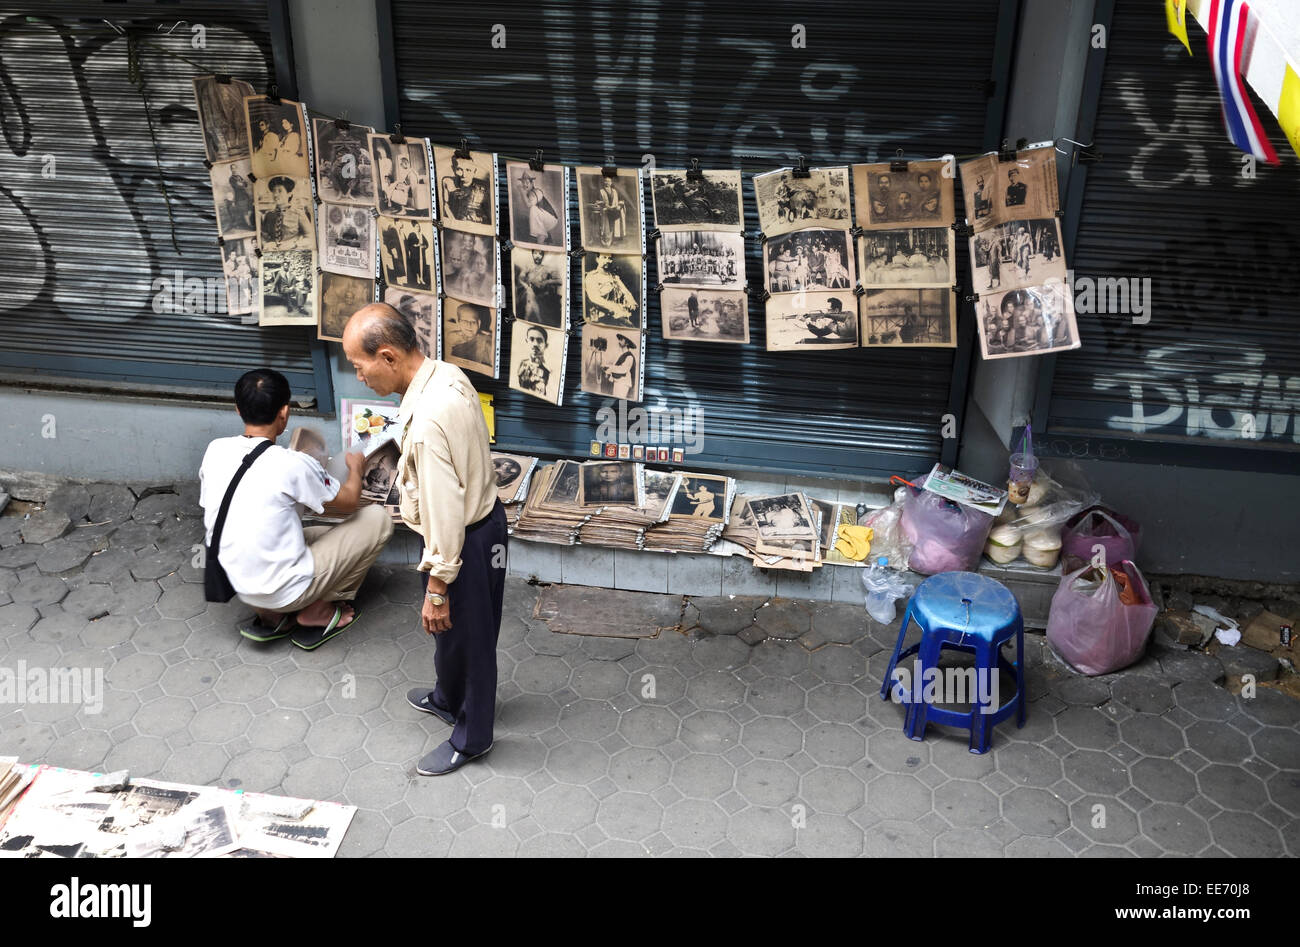 La venta ambulante de Asia fotos históricas del famoso pueblo de Tailandia, Bangkok, Tailandia, el sudeste de Asia. Foto de stock